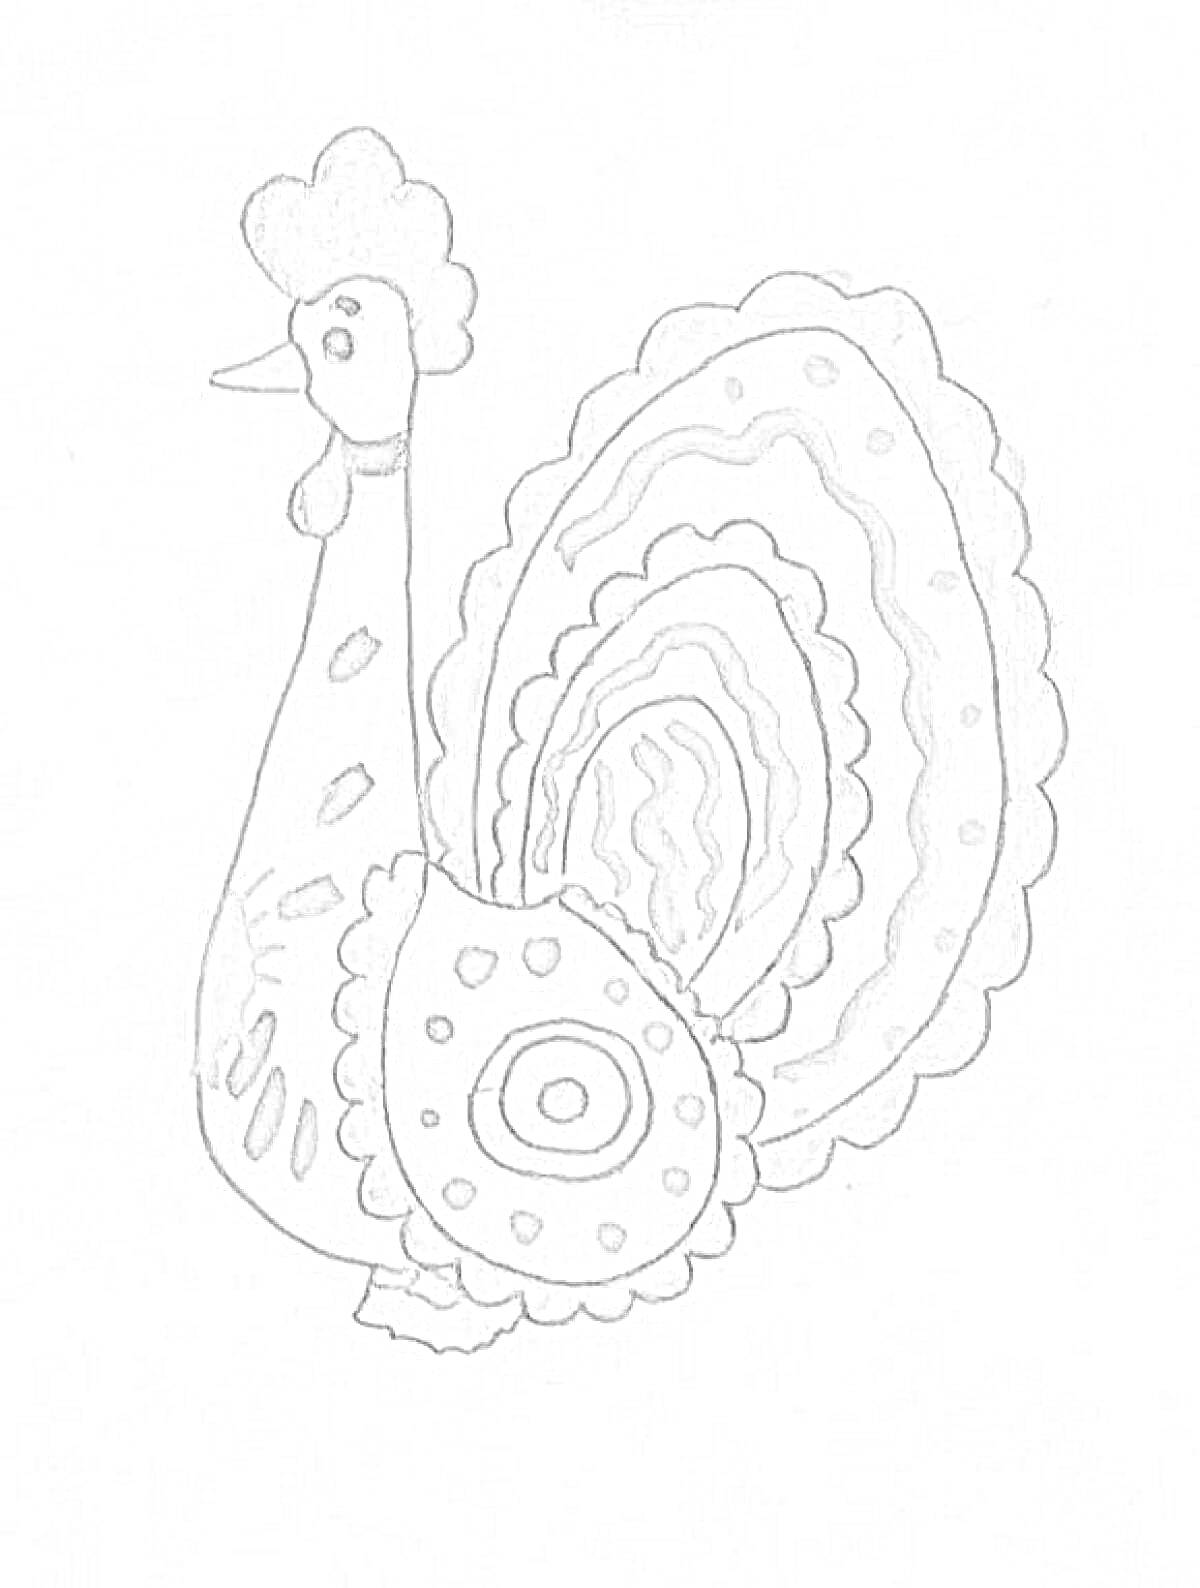 дымковская игрушка петушок с завитками и кружочками на крыльях и хвосте